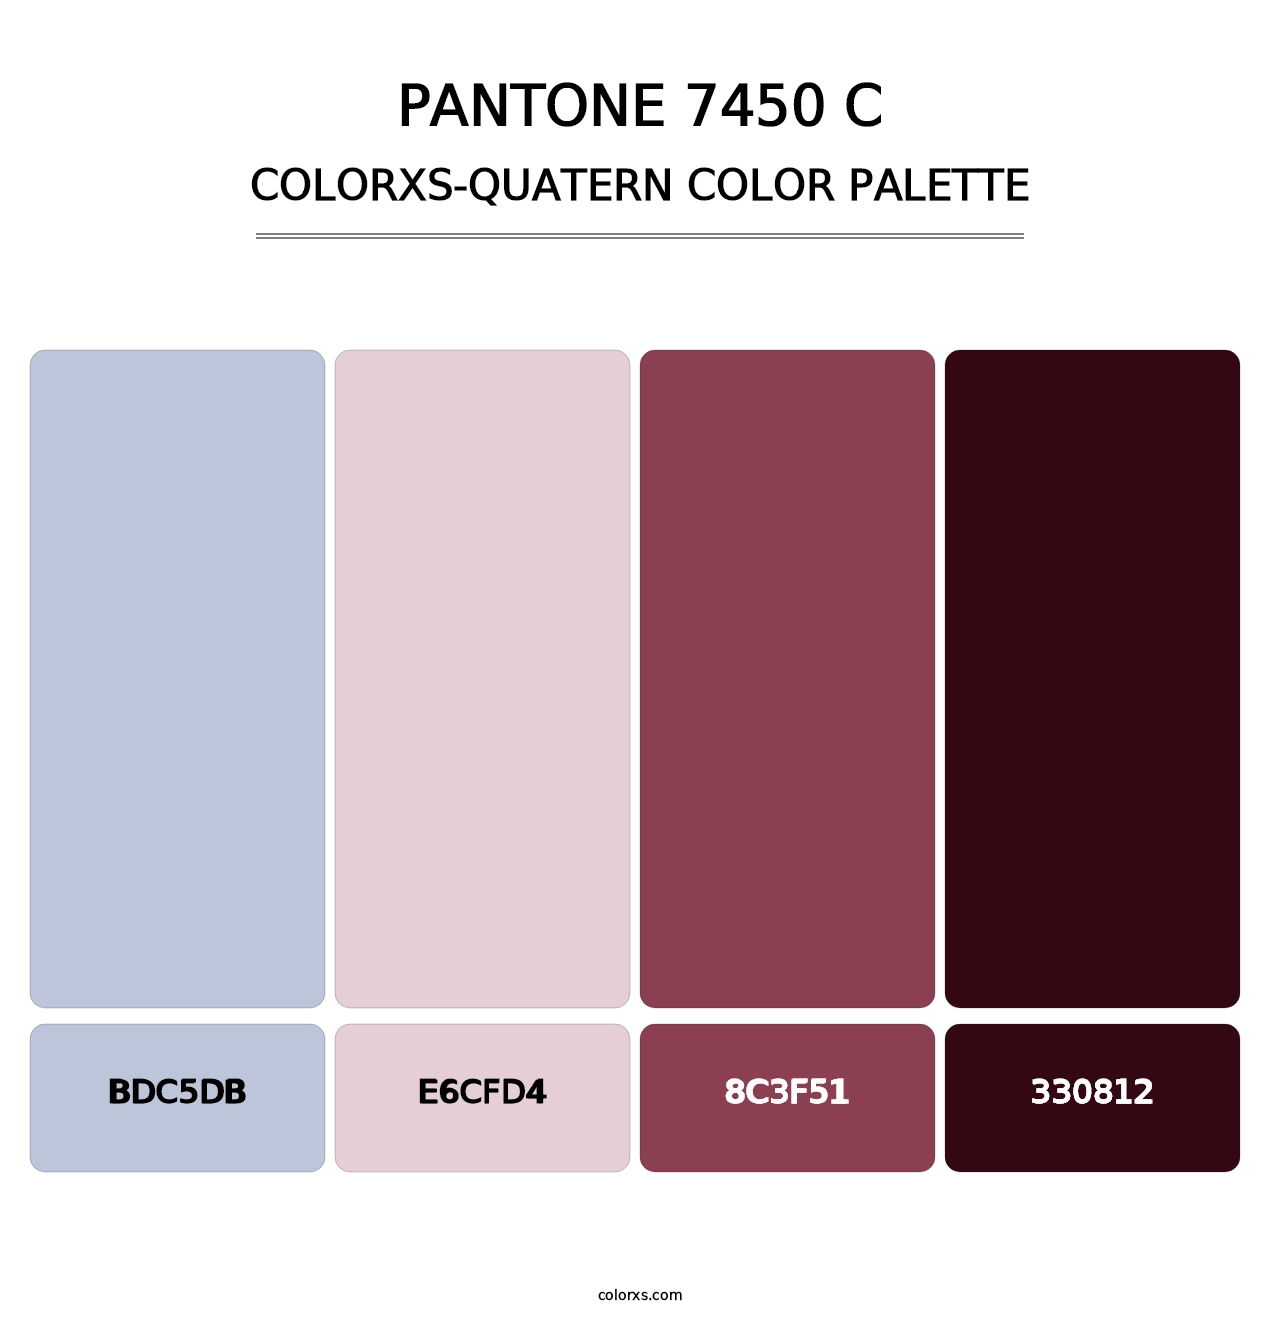 PANTONE 7450 C - Colorxs Quatern Palette